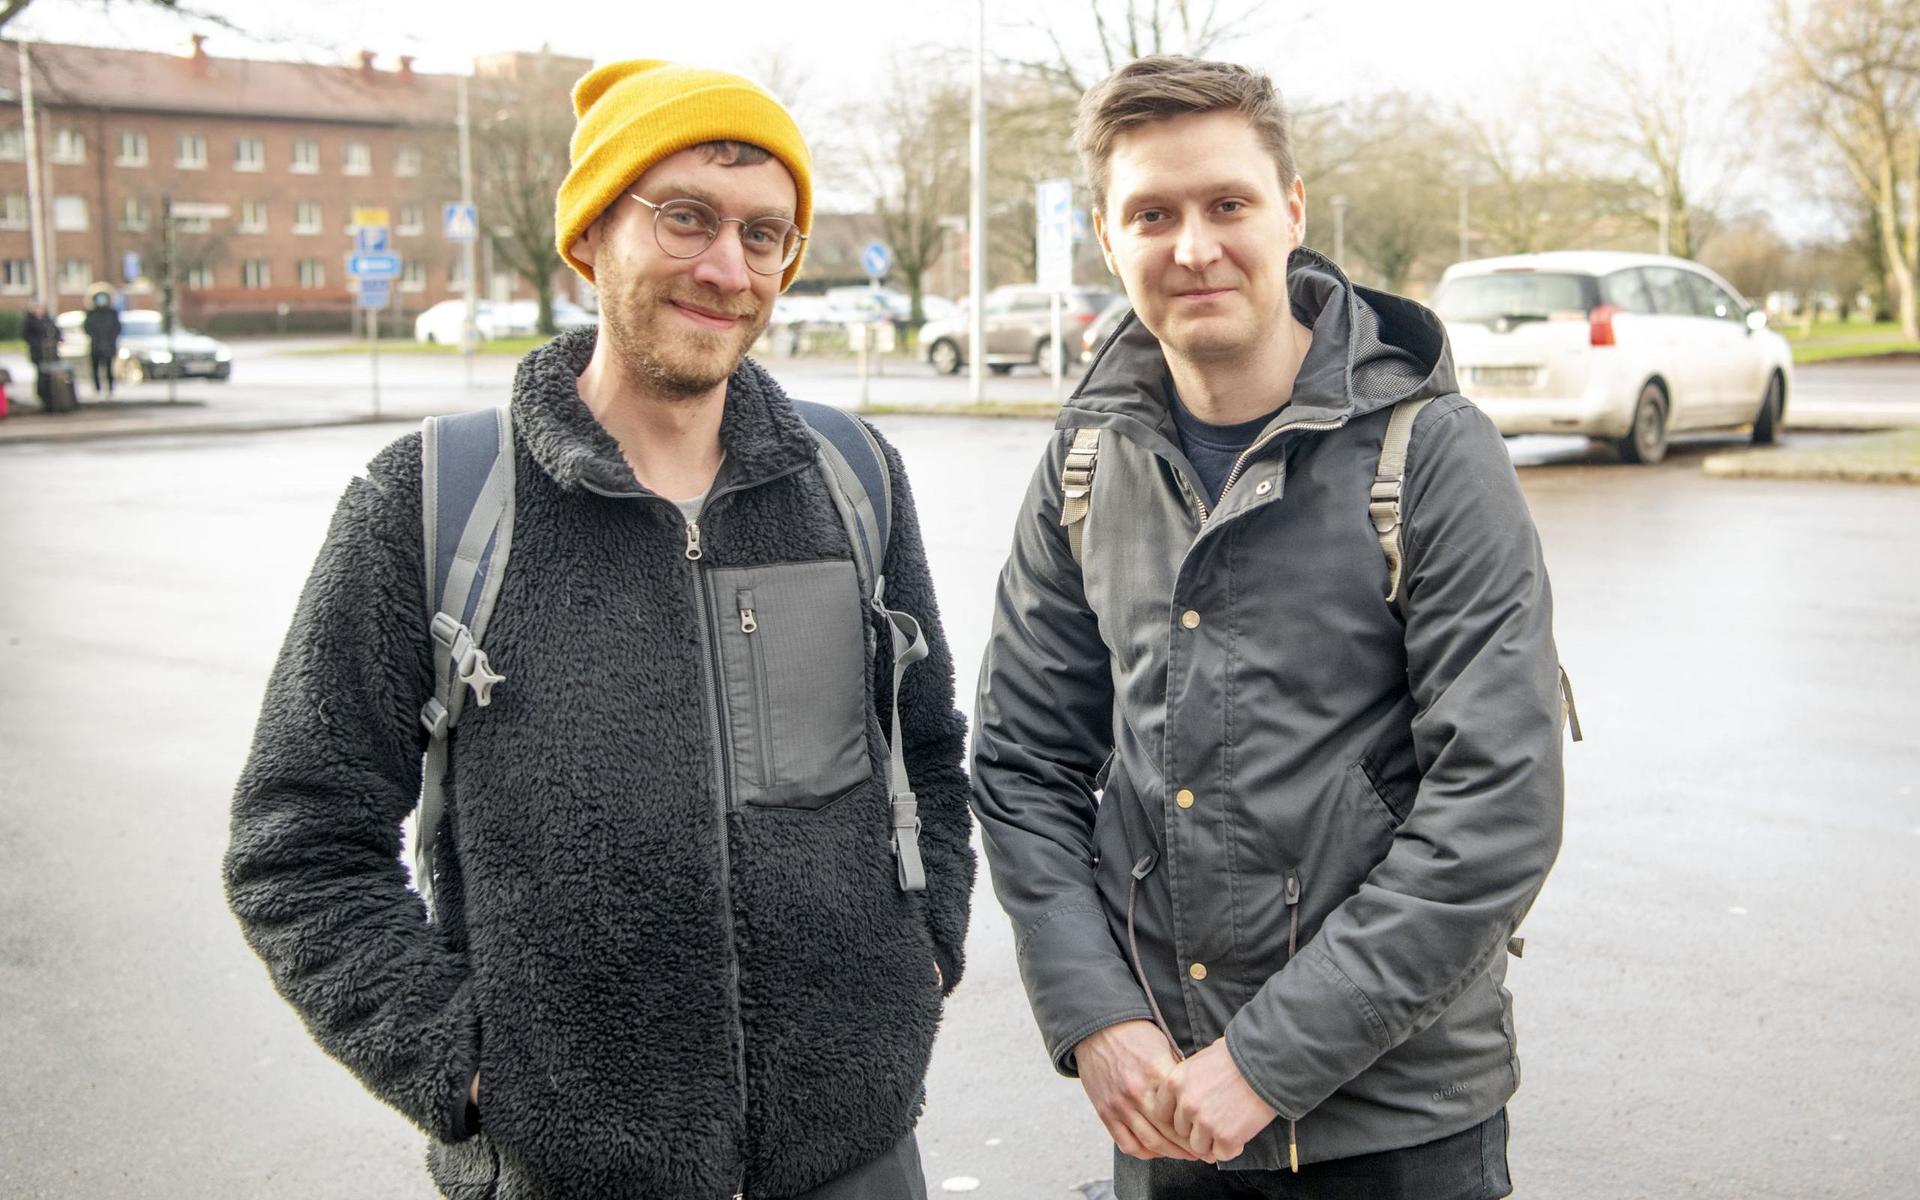 Robin Jäderup och Timmy Malmgren bar munskydd på tåget till Halmstad men plockade av dem när de kom fram. ”Vi bär dem av hänsyn till andra”, säger de.